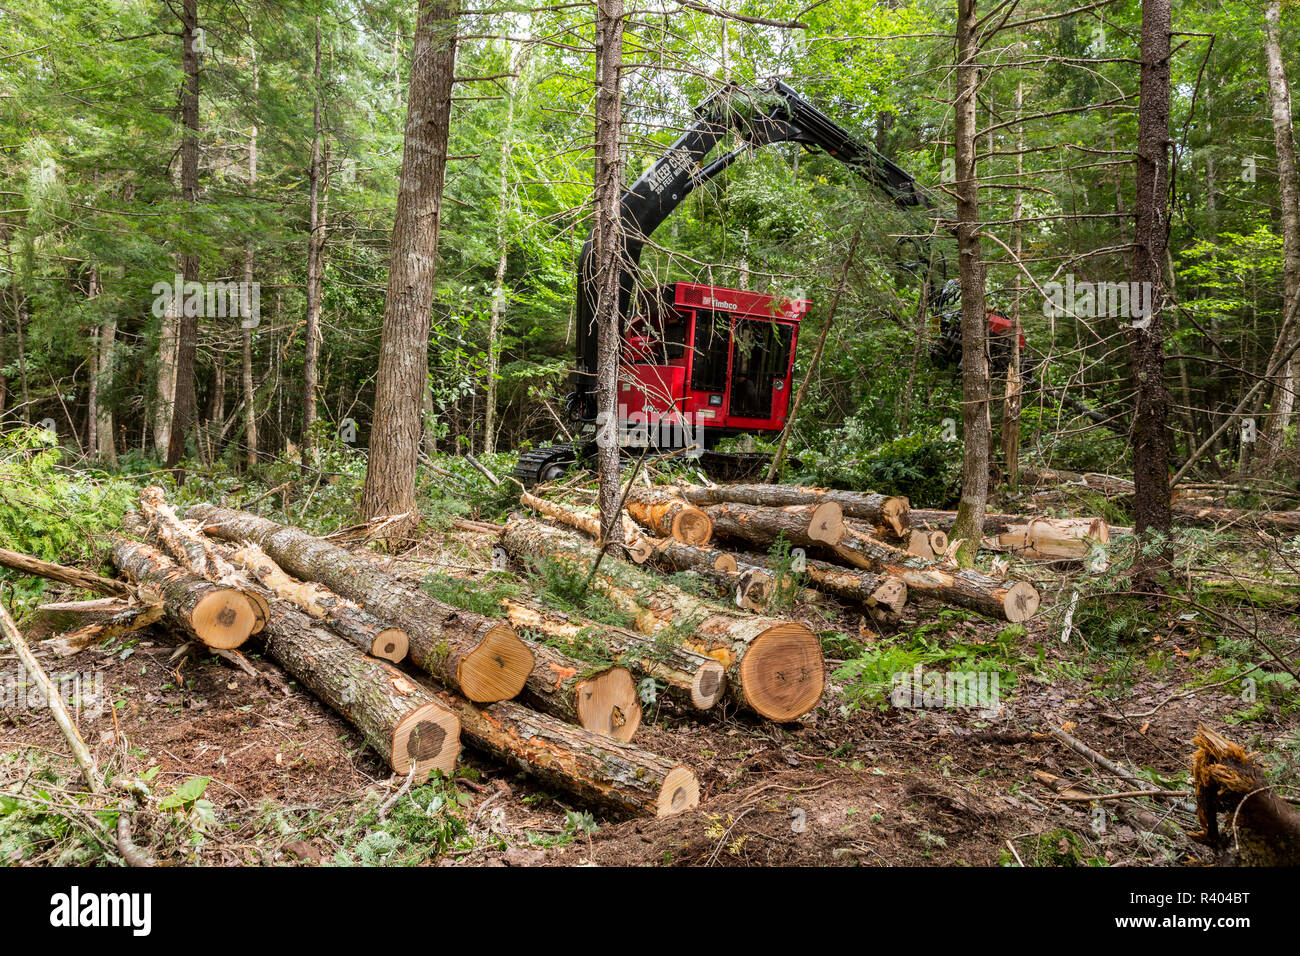 Journal de l'exploitation des arbres processeur Valmet, Reed Plantation, Reed, Maine. Banque D'Images